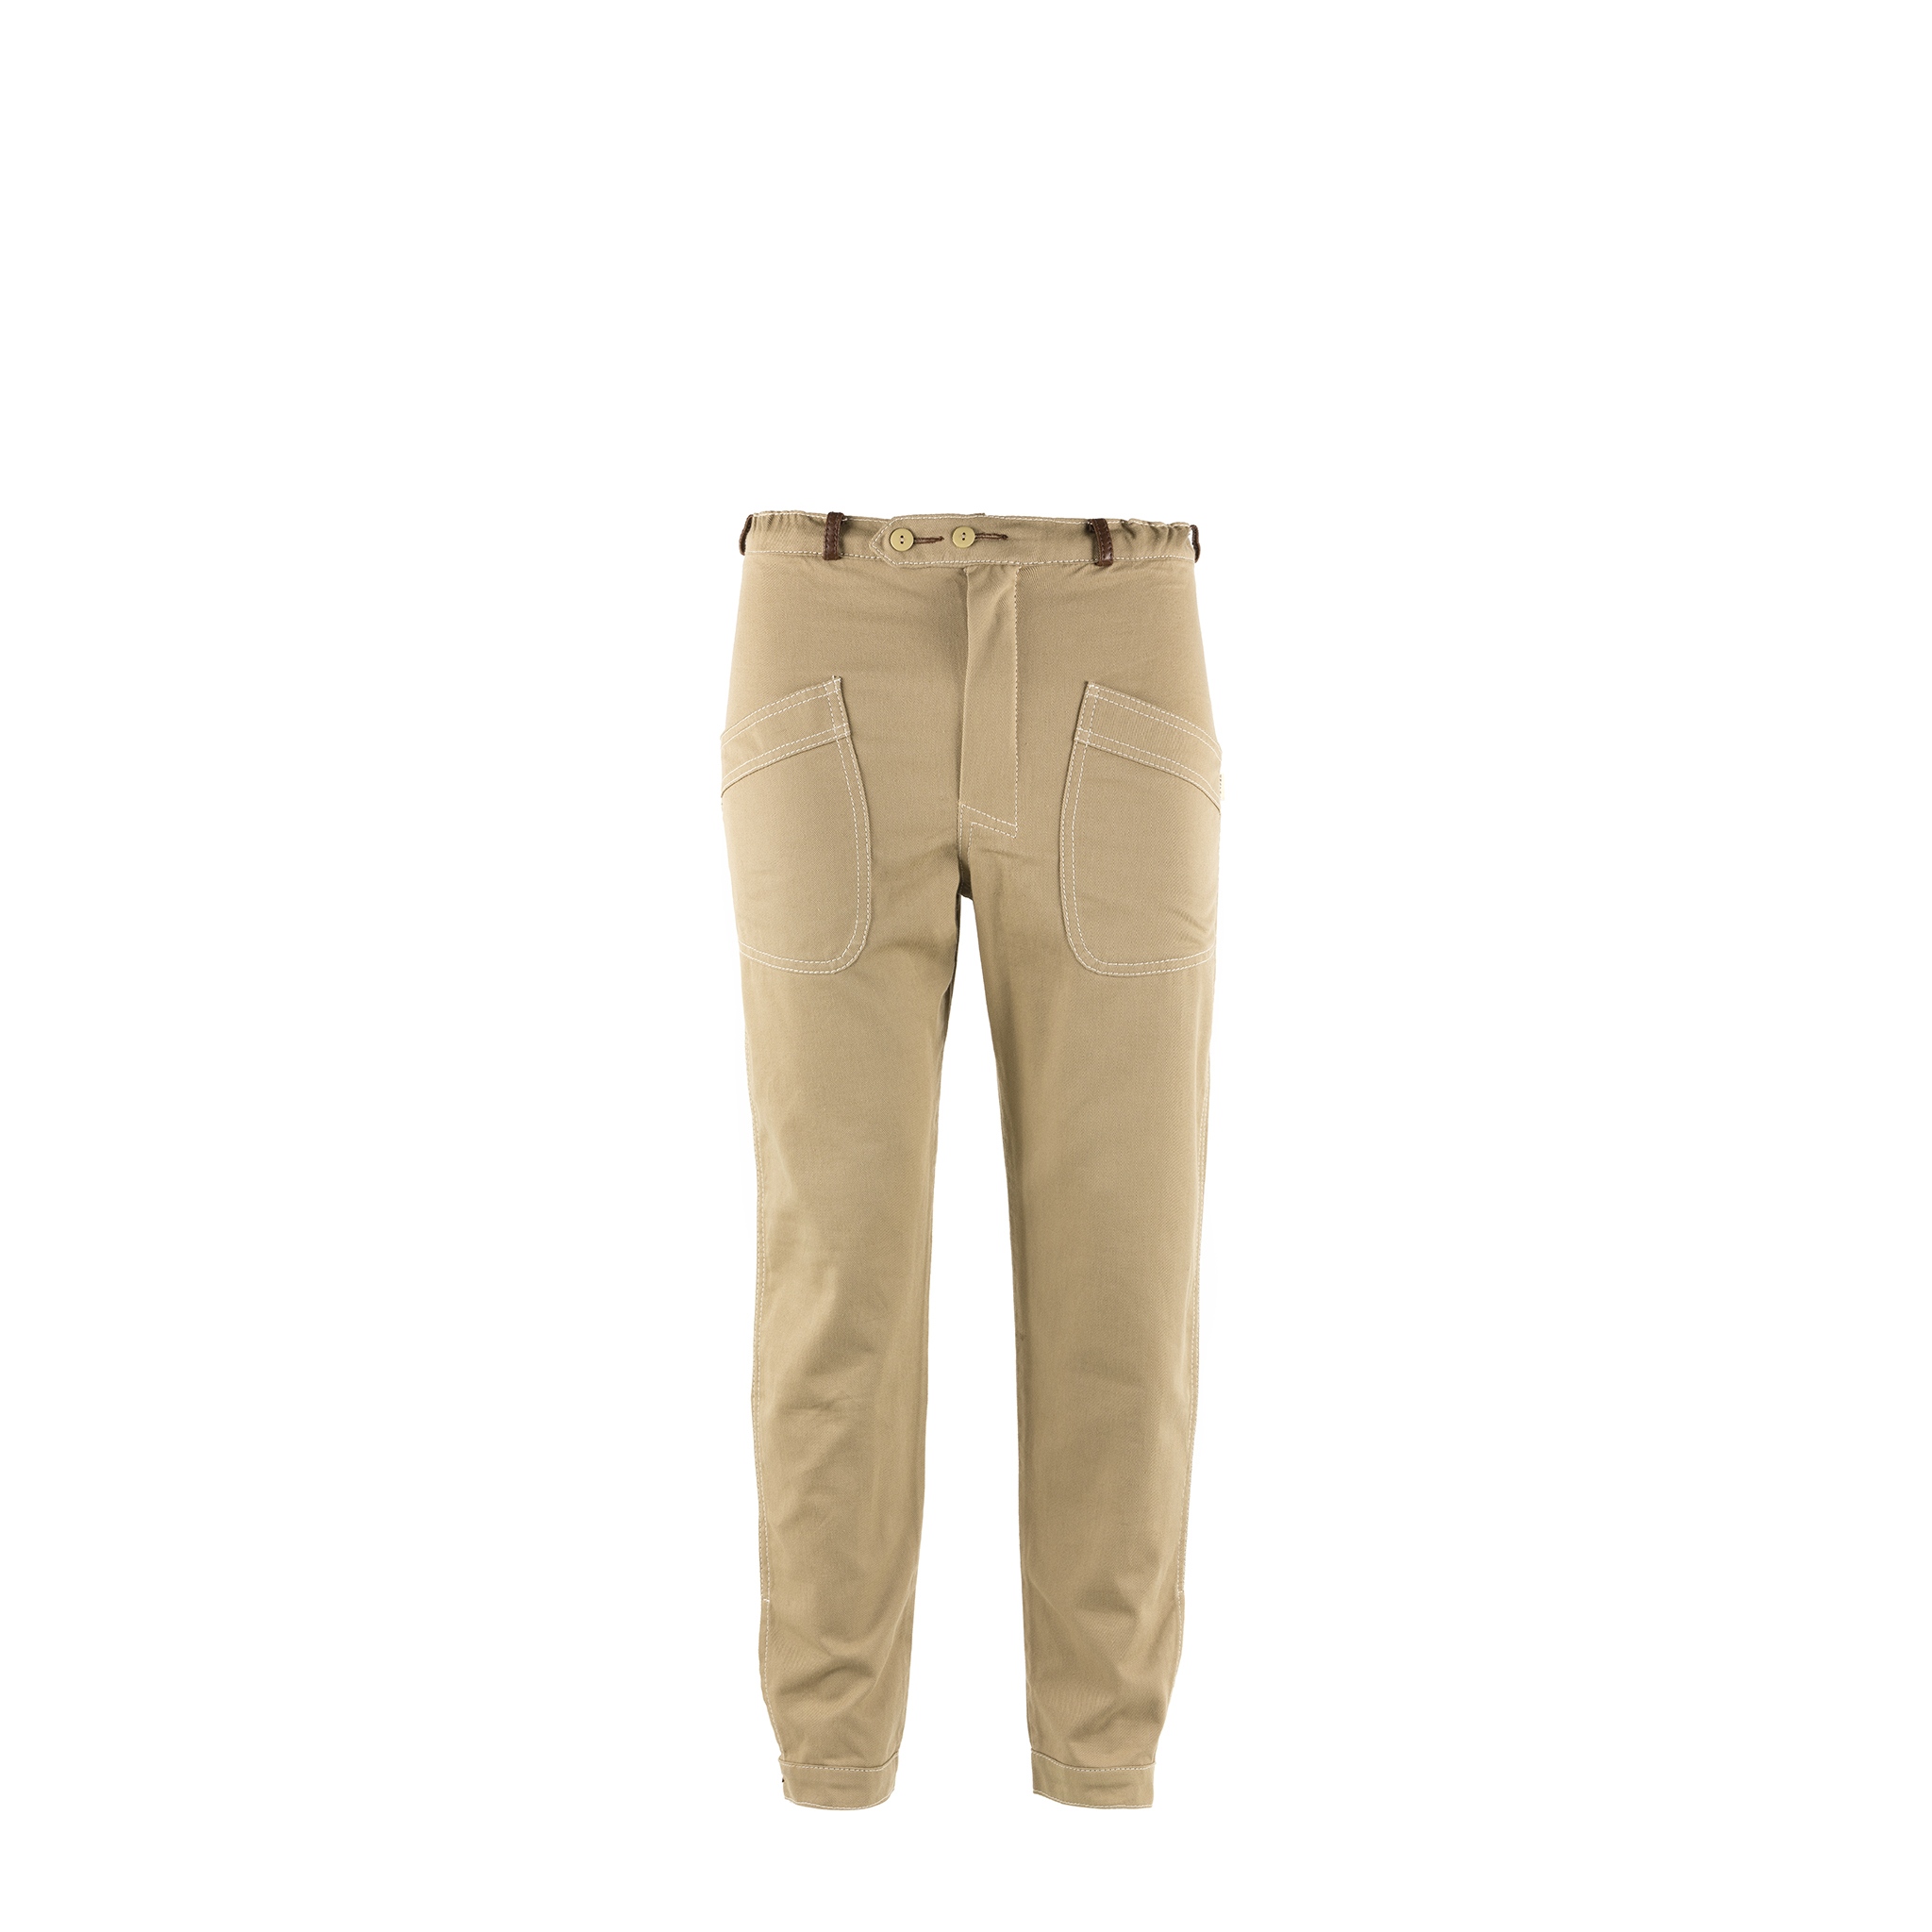 Pilot Pants - Cotton gabardine - Beige color